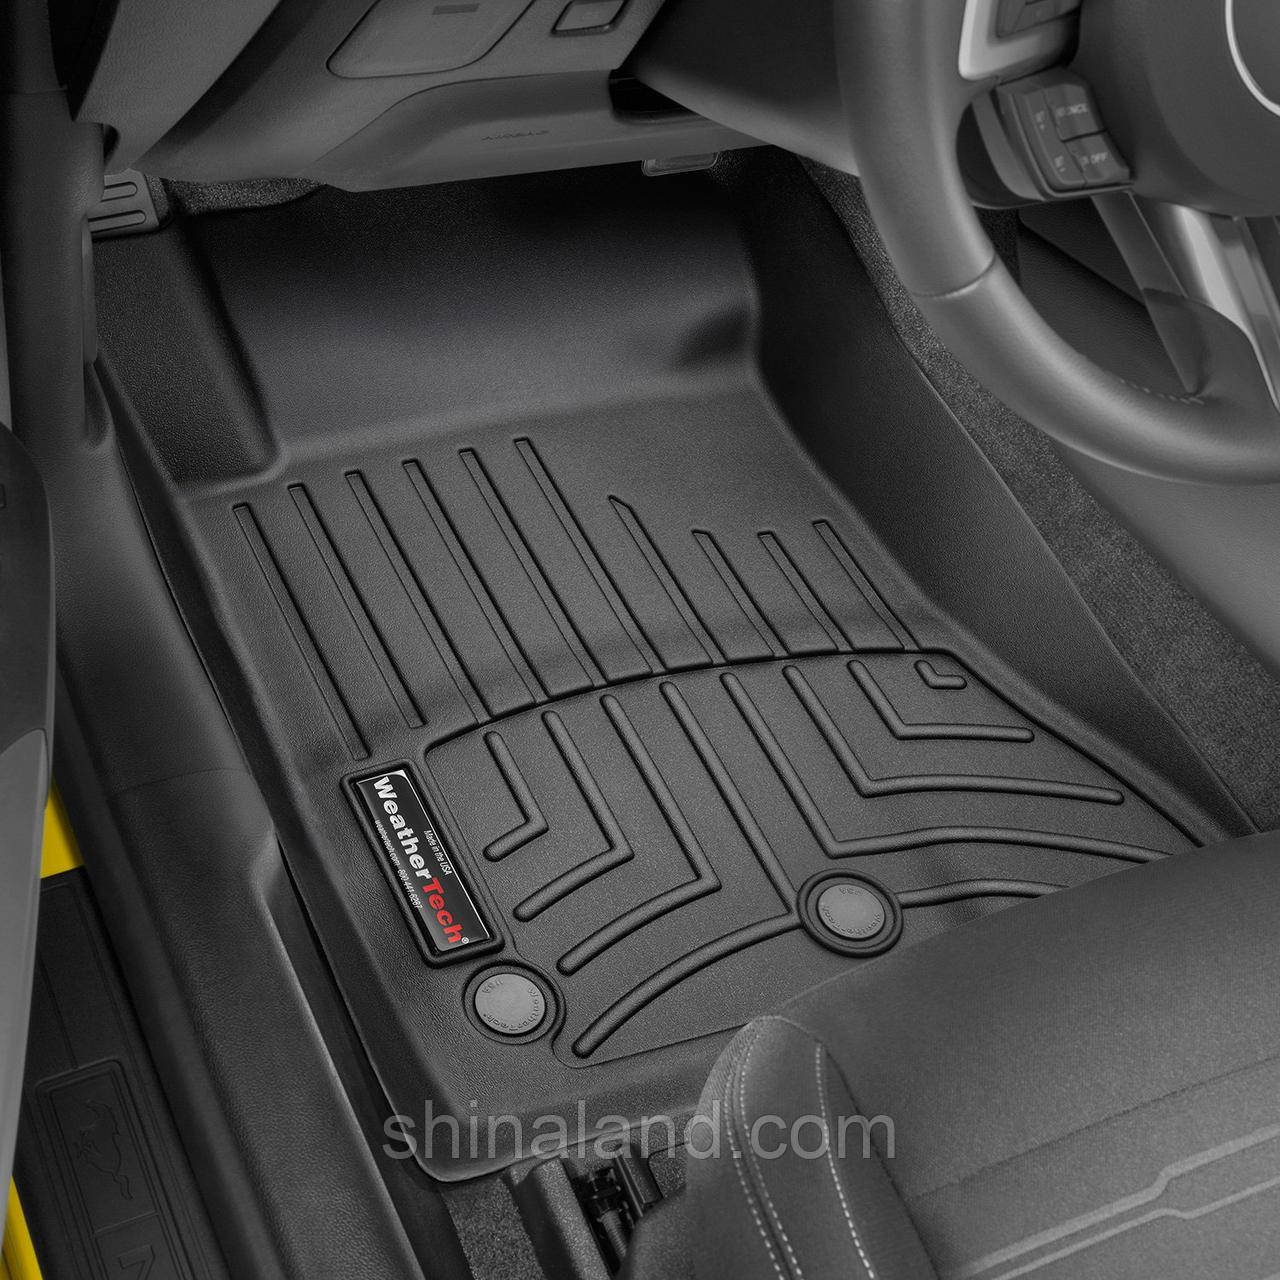 

Коврики в салон Ford Mustang VI 2015 - черные, Tri-Extruded (WeatherTech) - передний ряд, Черный